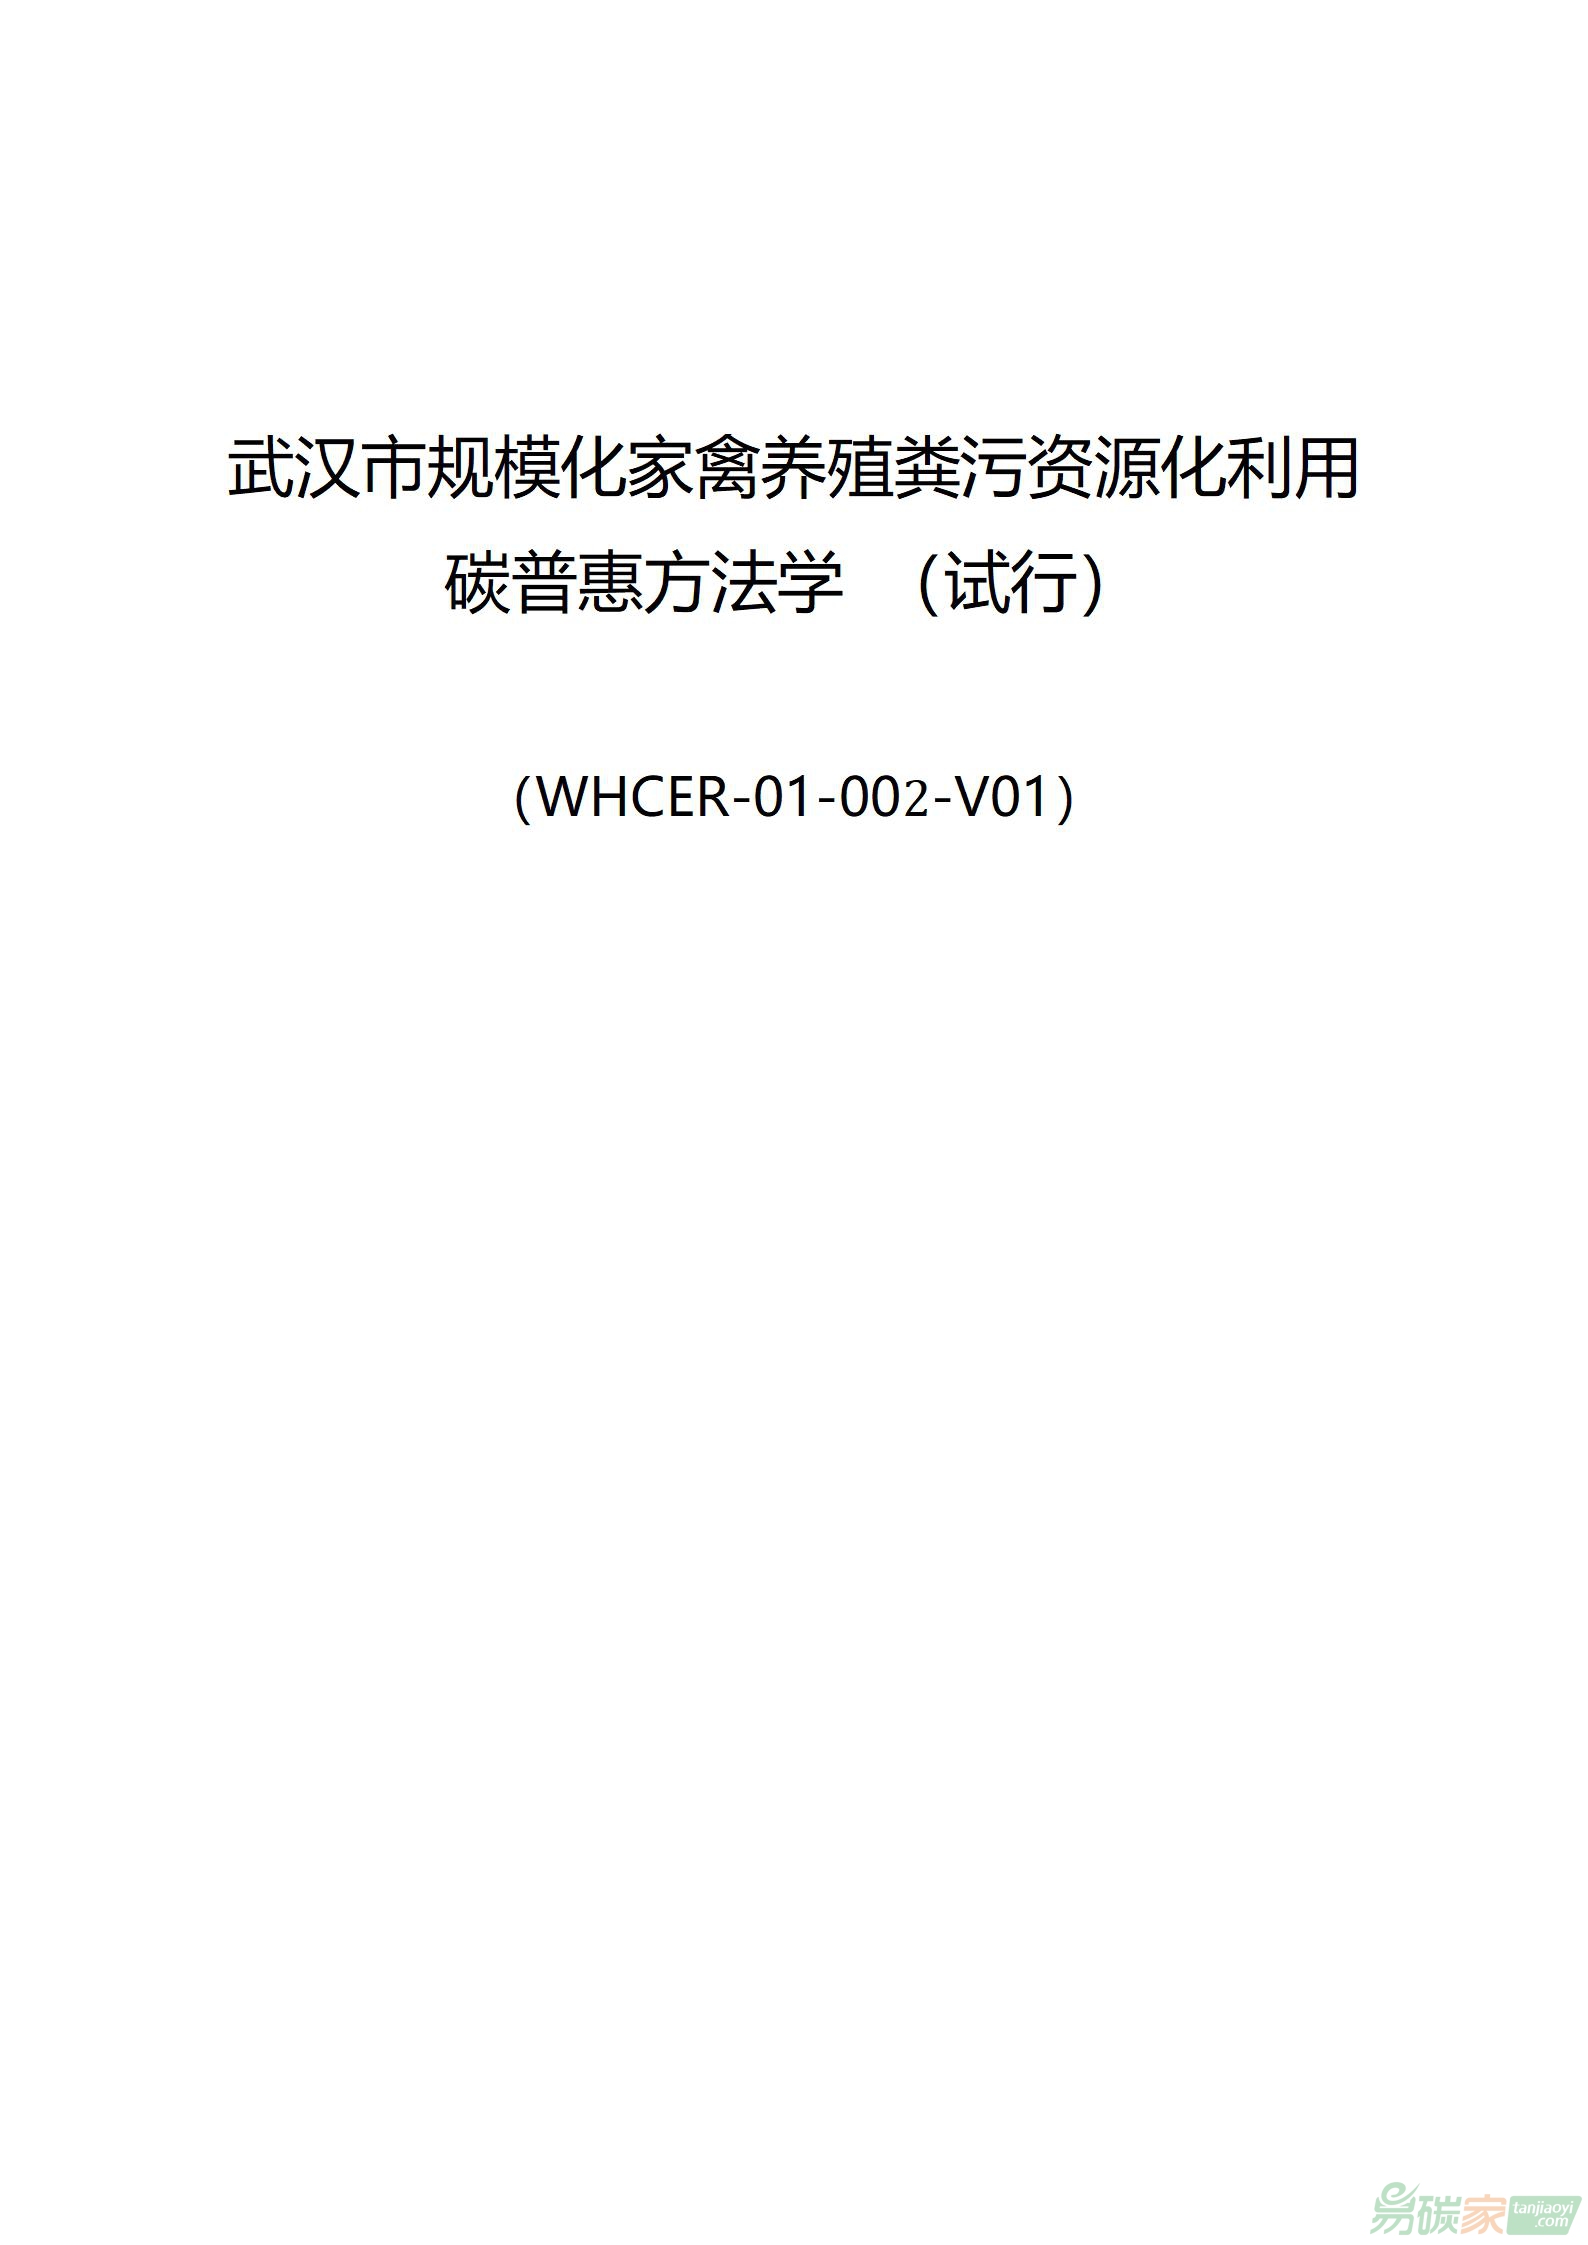 武汉市规模化家禽养殖粪污资源化利用碳普惠方法学 （试行）（WHCER-01-002-V01）